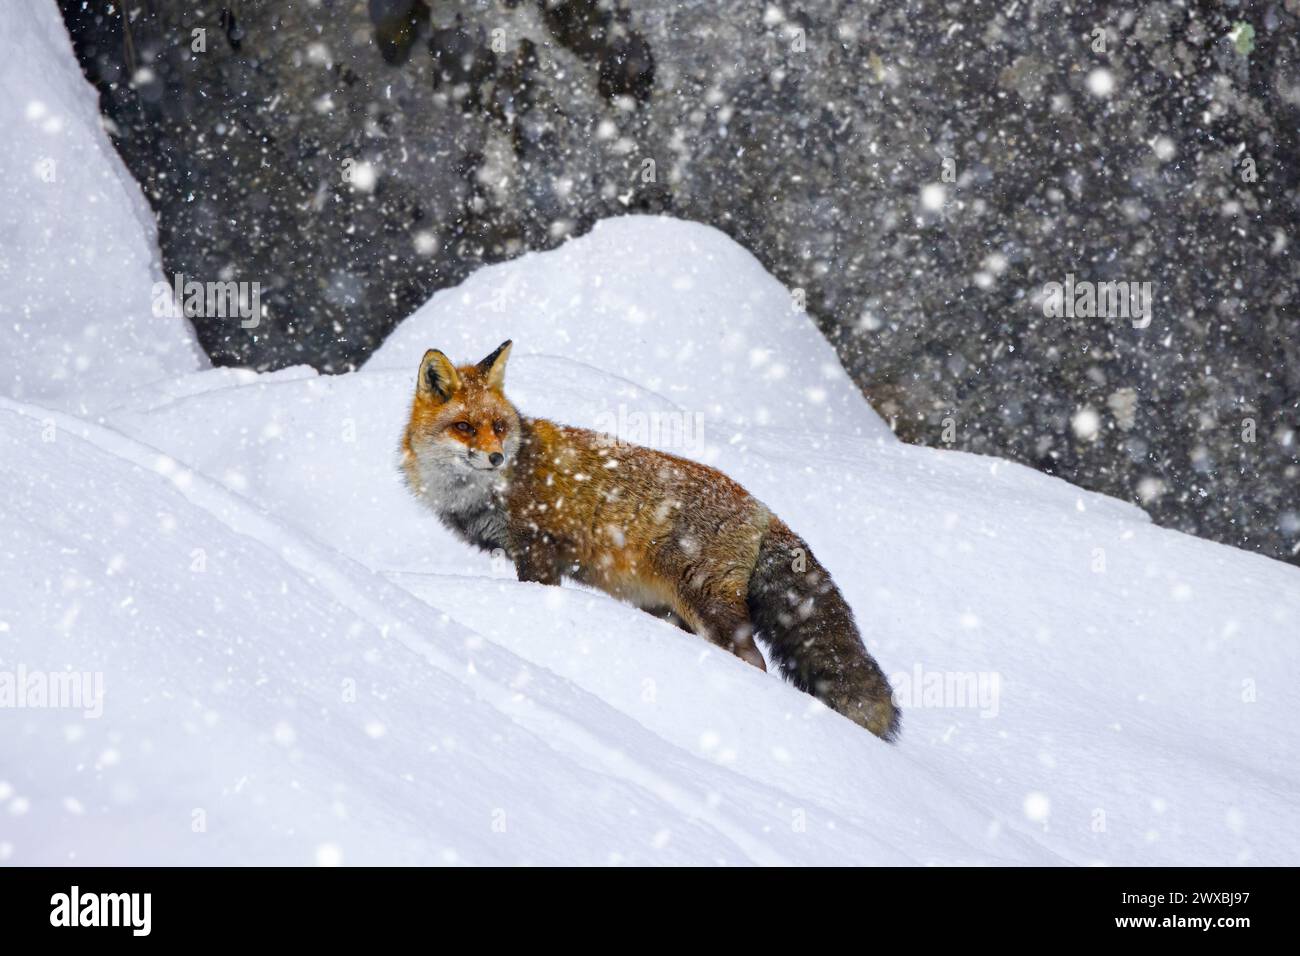 La volpe rossa (Vulpes vulpes) caccia nella neve sotto la parete rocciosa in montagna in inverno durante le nevicate Foto Stock